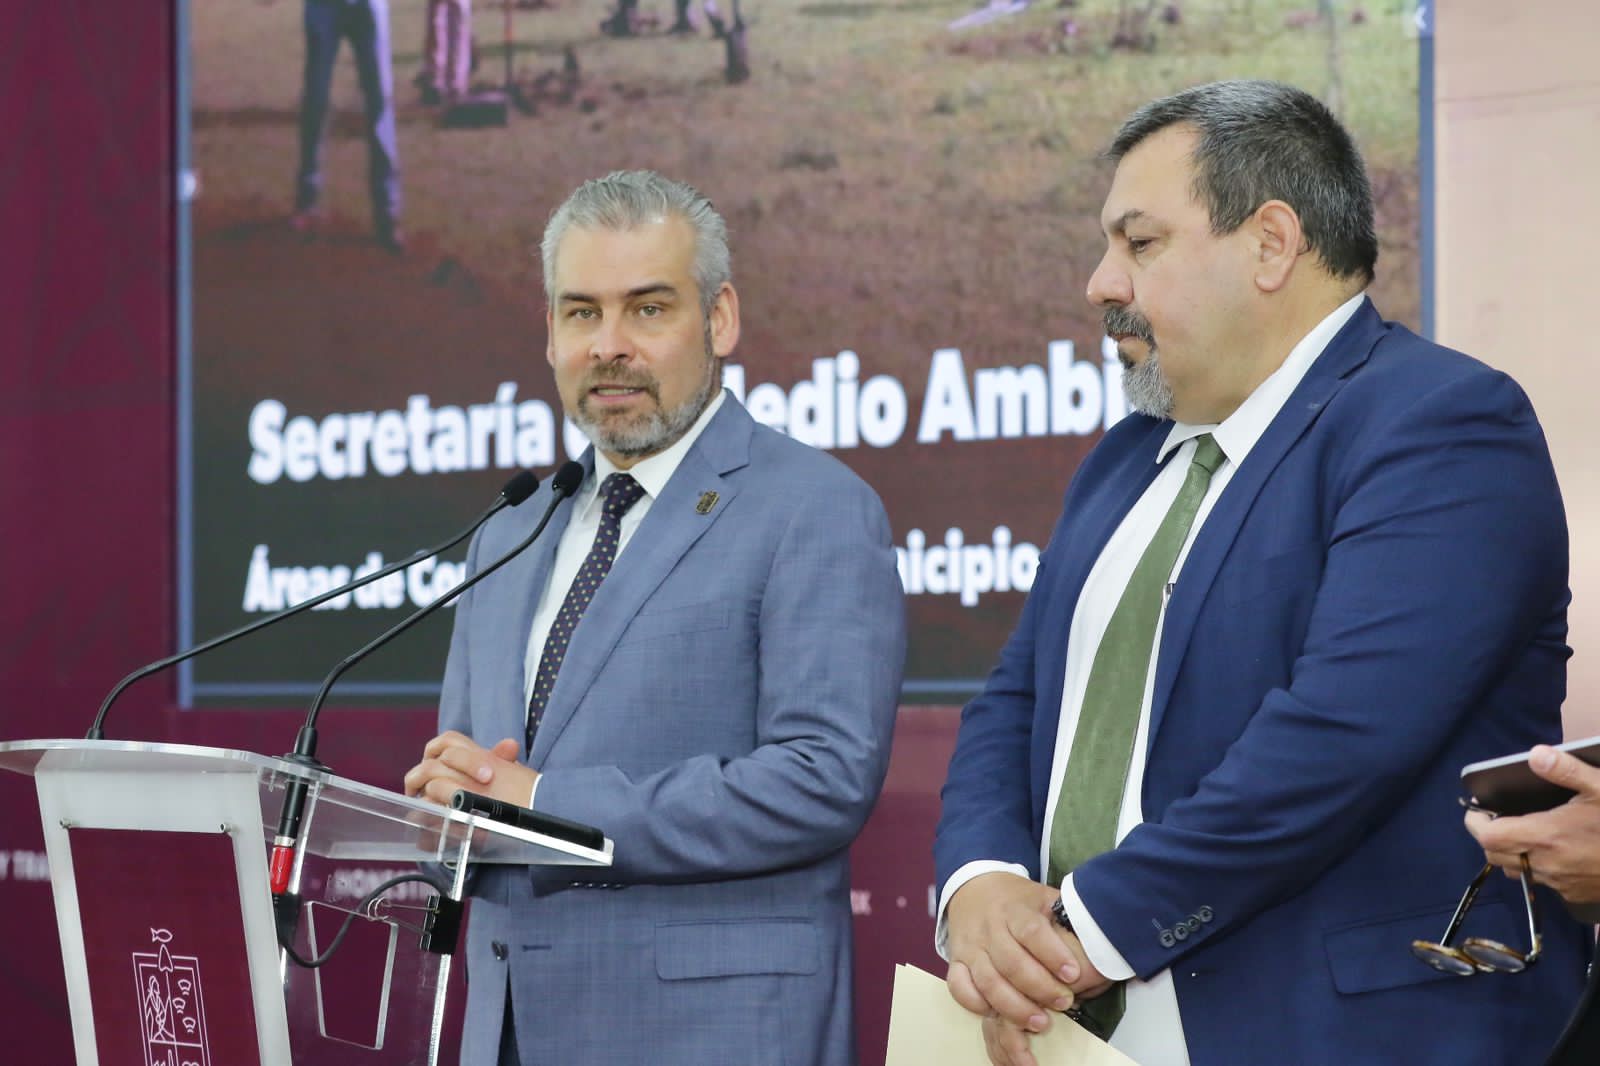 Tendrá Morelia más de 5.5 mil nuevas hectáreas con decreto de proteccsión ambiental: Bedolla